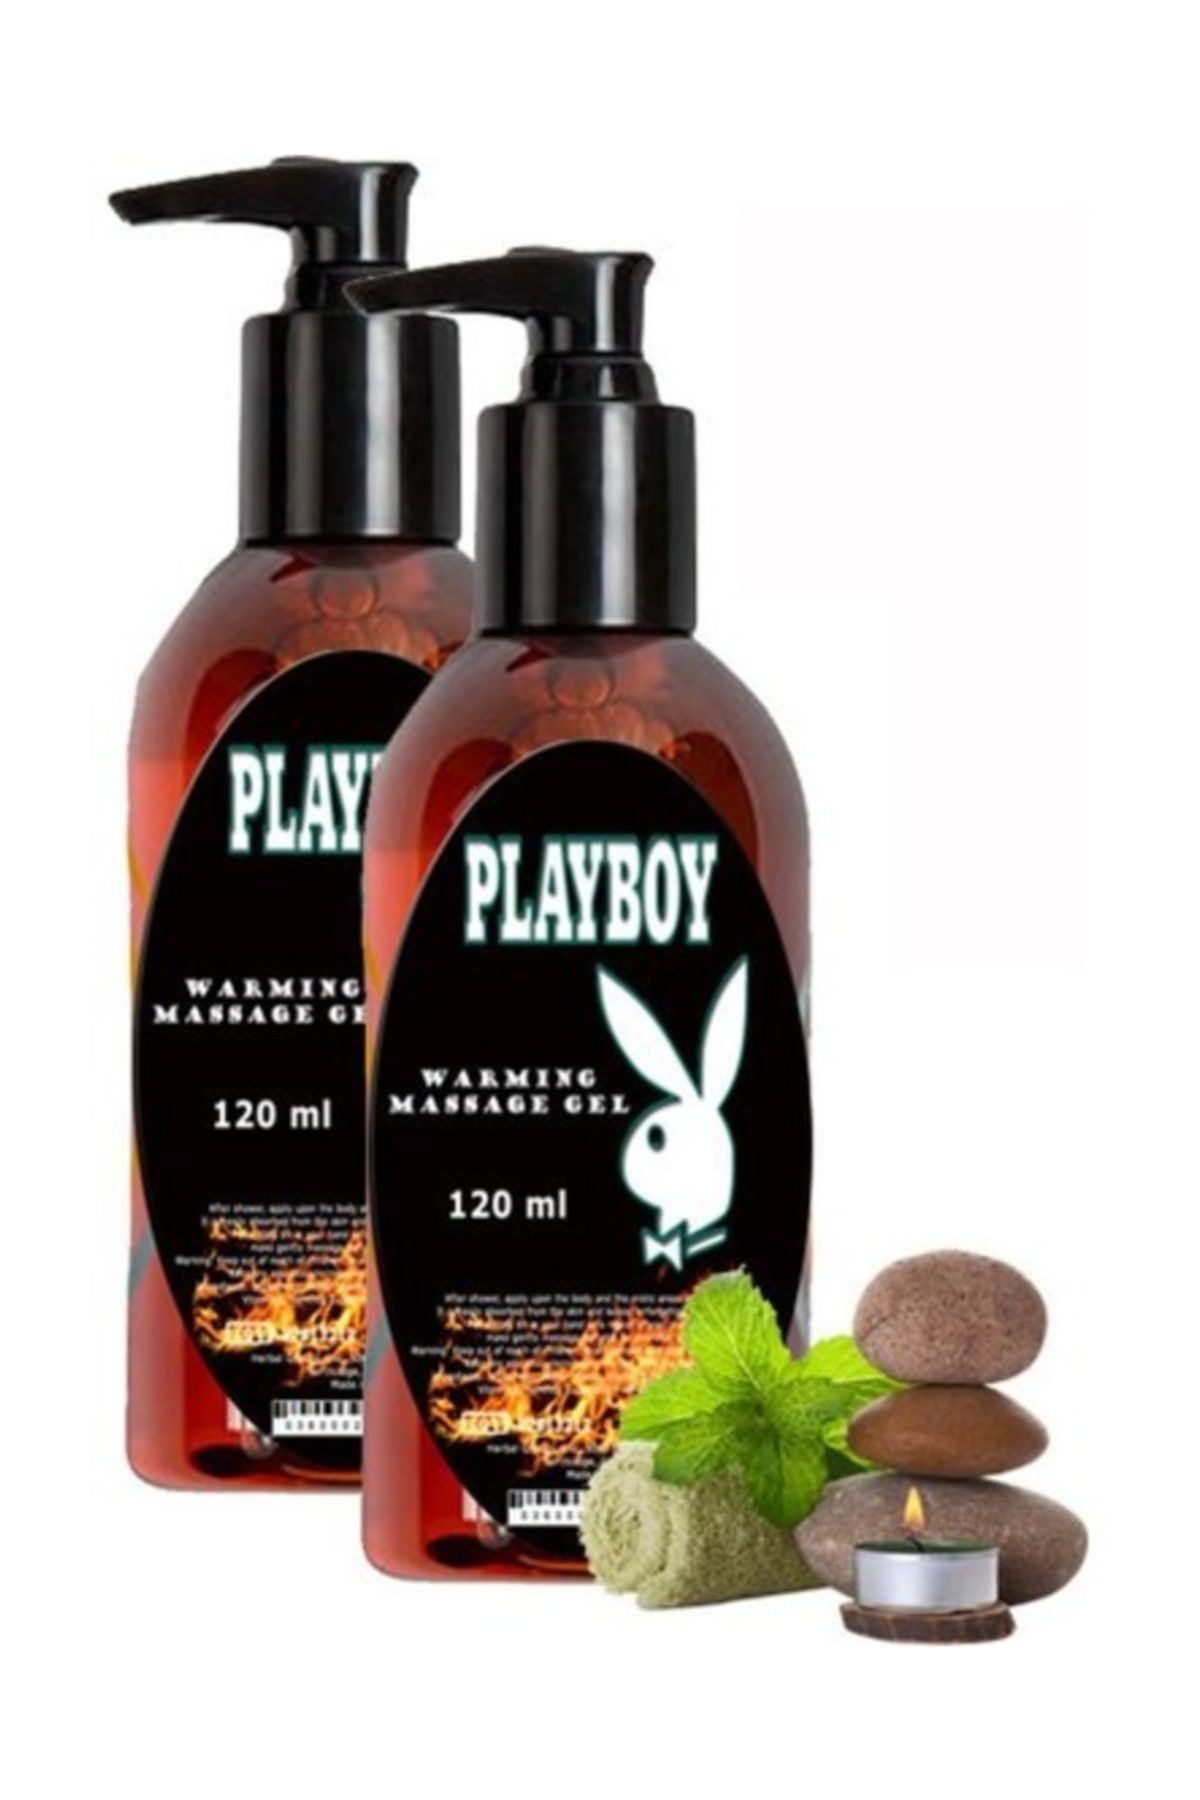 Playboy Warming Massage Gel 2 Adet 120 ml Isıtıcılı, Rahatlatıcı, Kaydırıcı Tüm Vücut Masaj Jeli